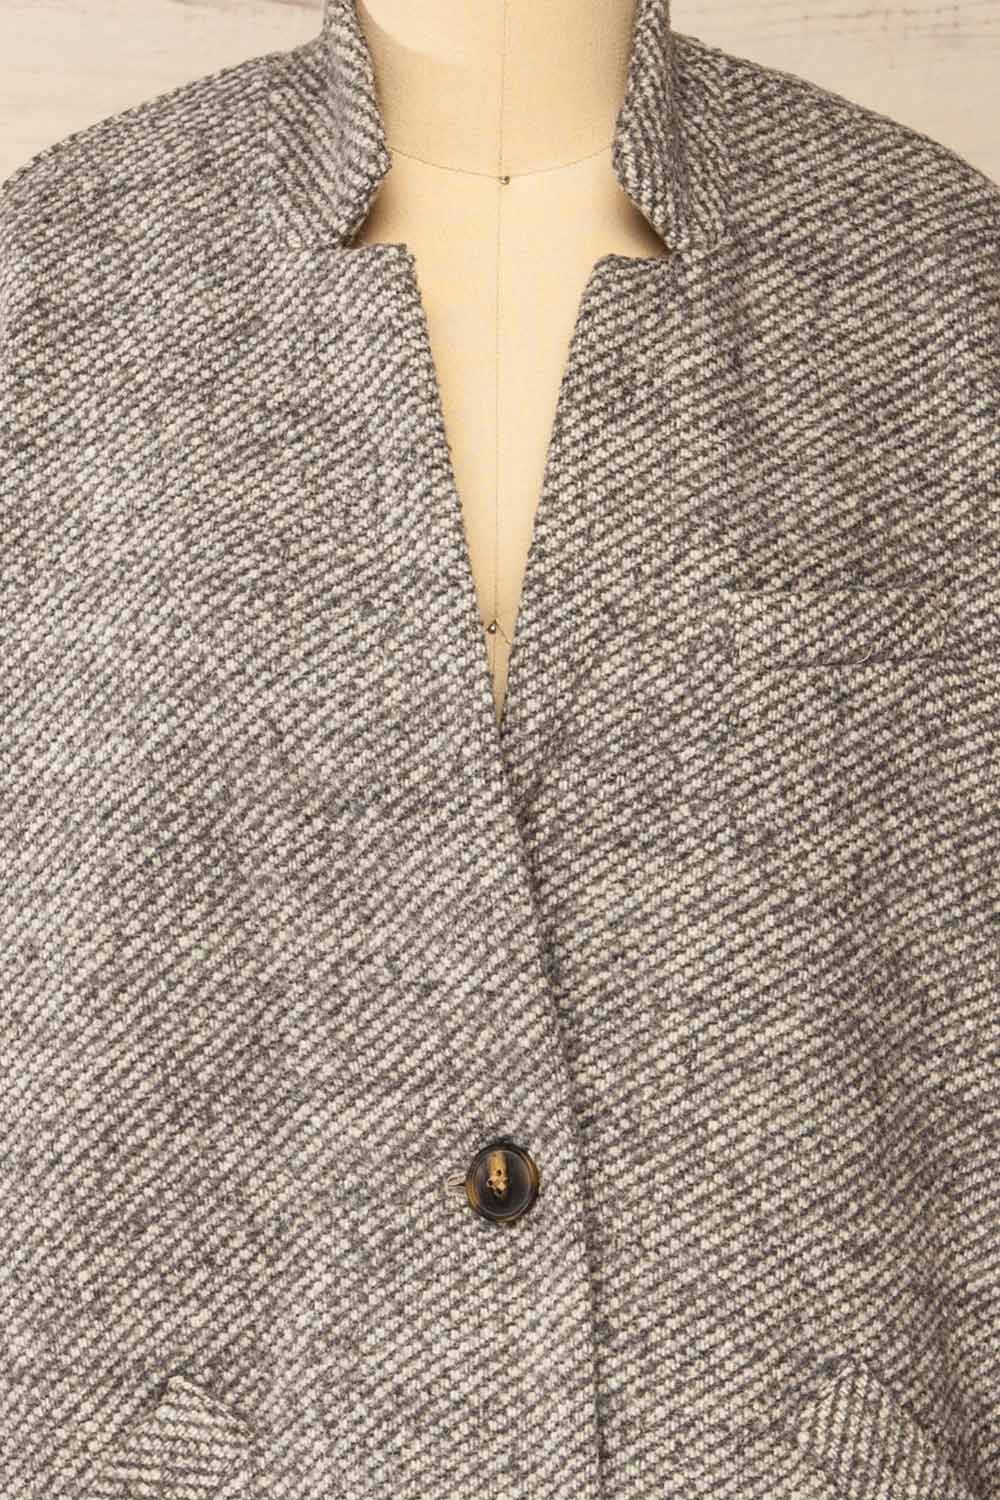 Nowskie Grey Short Coat w/ Buttons | La petite garçonne front close-up